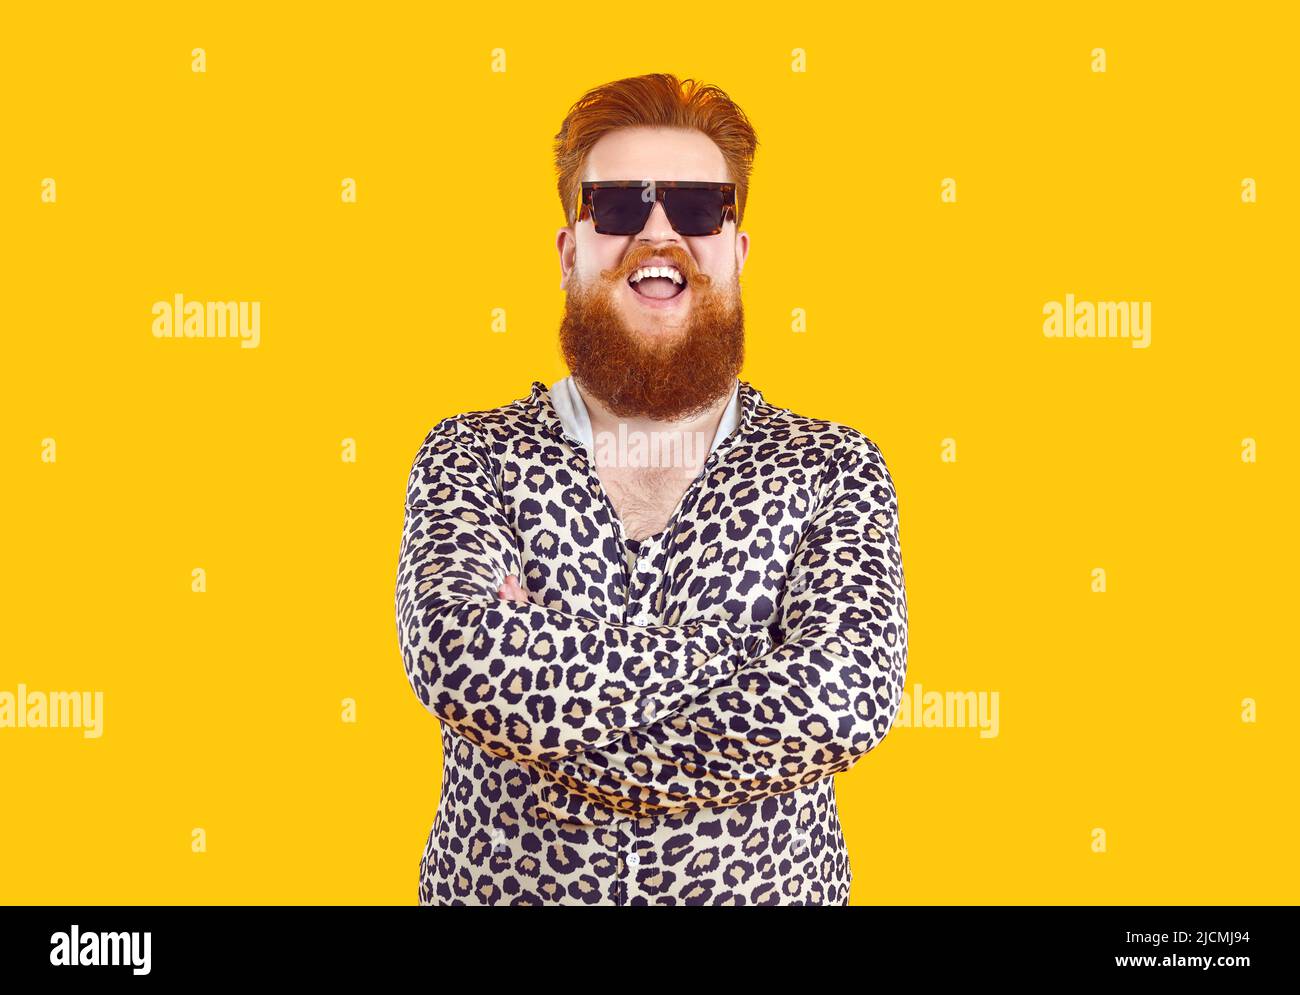 Portrait of strange funny cool chubby bearded man isolated on orange background. Stock Photo